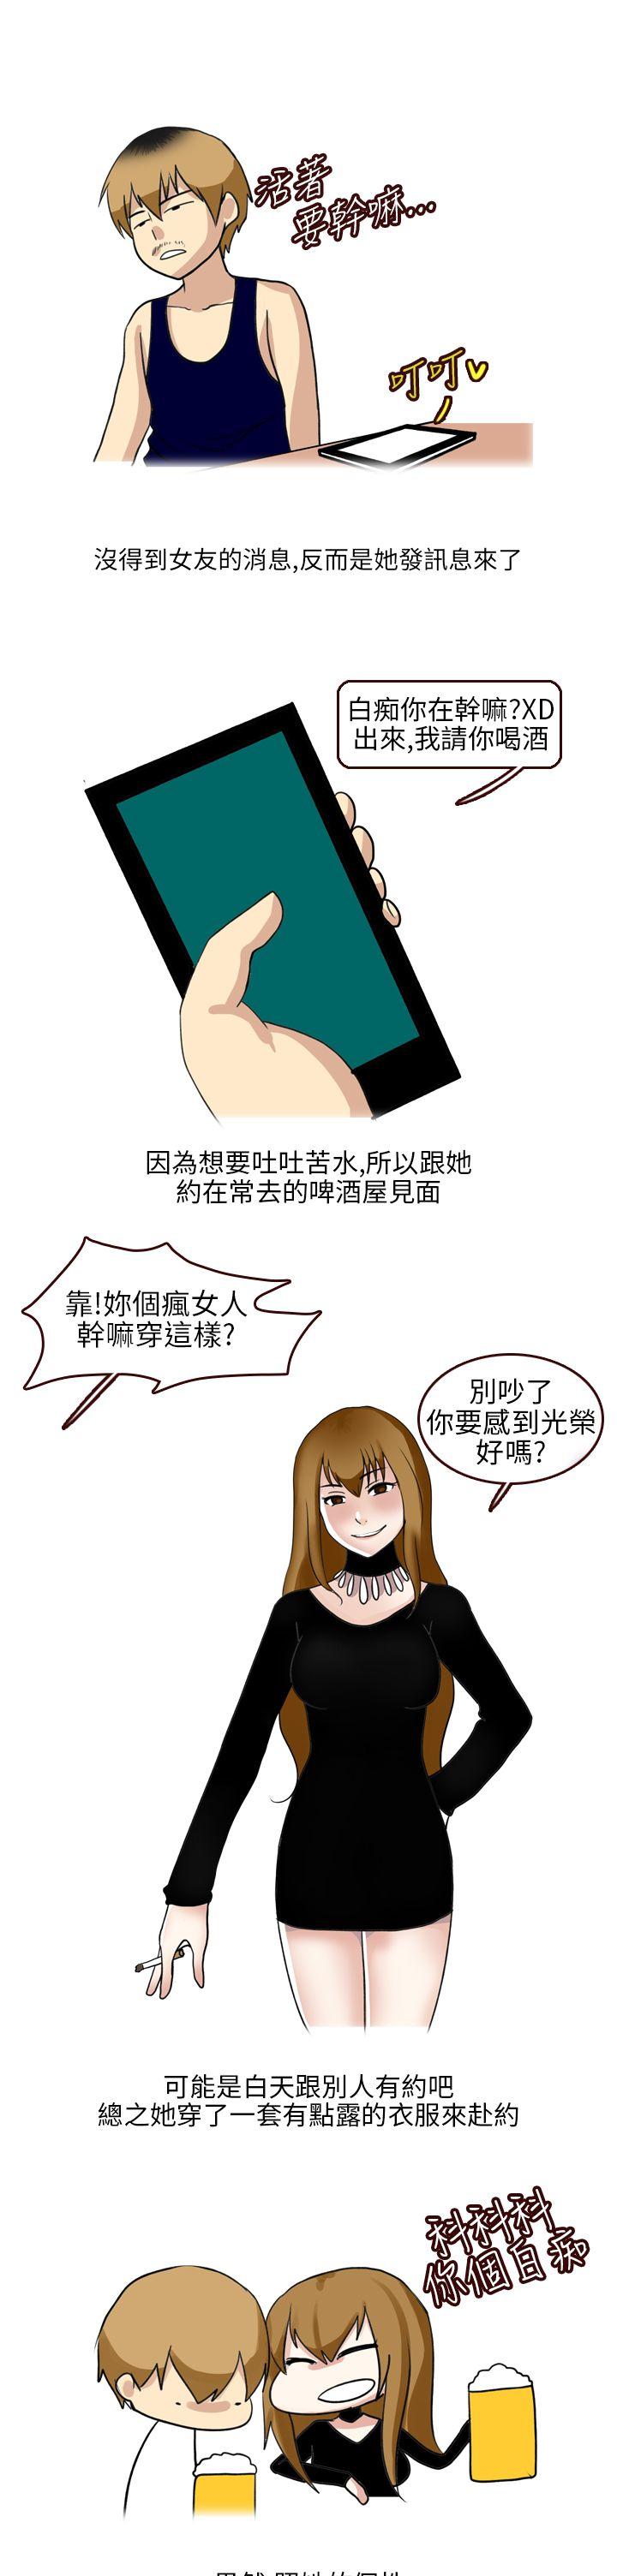 秘密Story第二季  不良少女(上) 漫画图片9.jpg